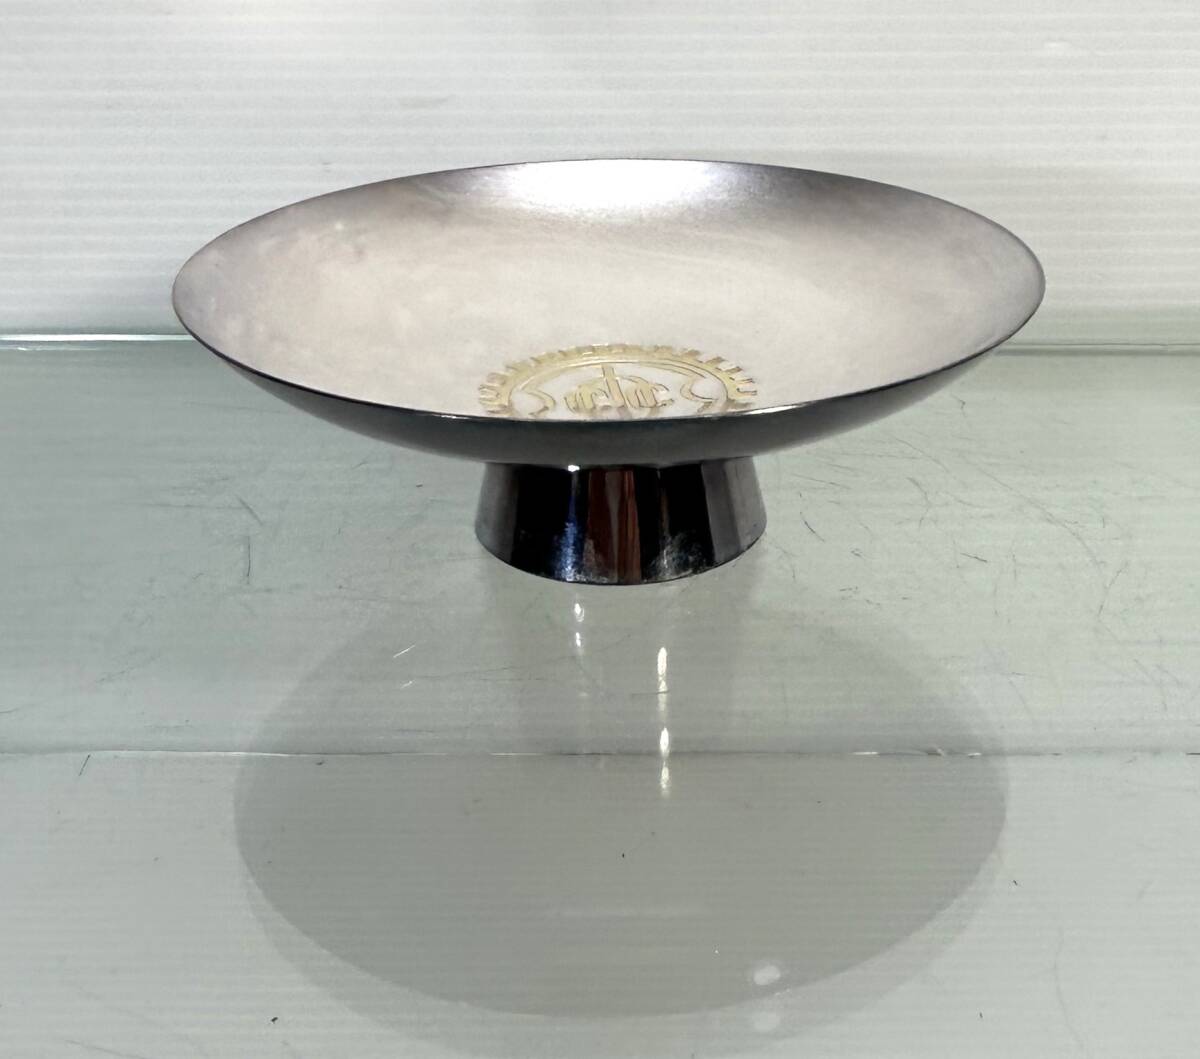  оригинальный серебряный оригинальный серебряный чашечка для сакэ серебряный чашечка для сакэ sake кубок sake чашечка для сакэ посуда для сакэ серебряный контейнер печать иметь 142g